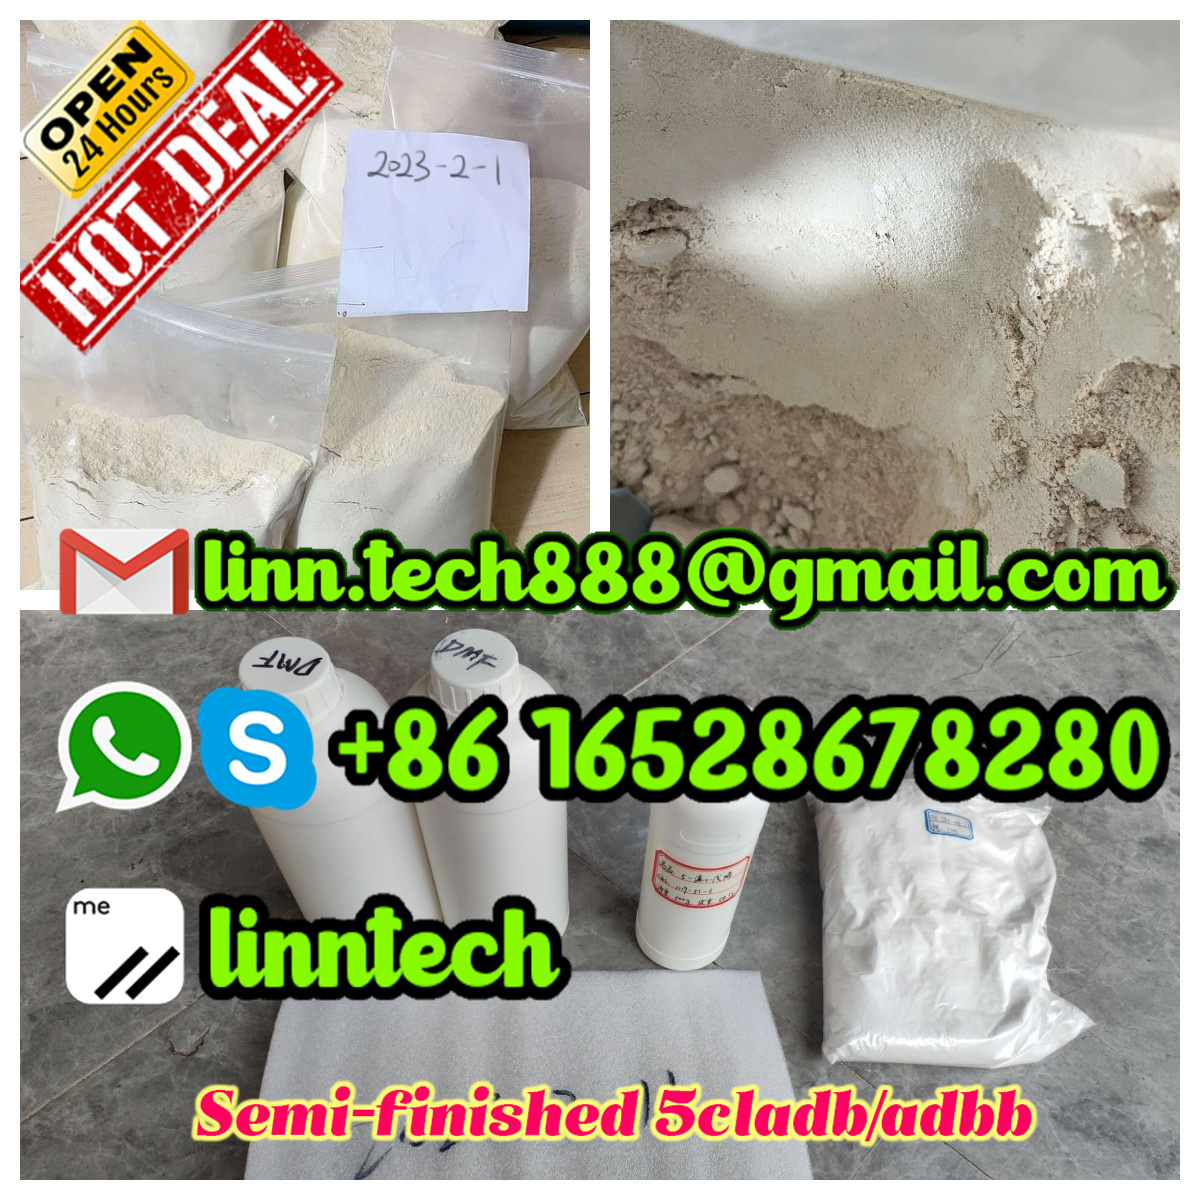 Buy Semi-finished 5cl-adba,4fad,adbb,adb-b,mdmb201,5fadb yellow powder Chemical Research - photo